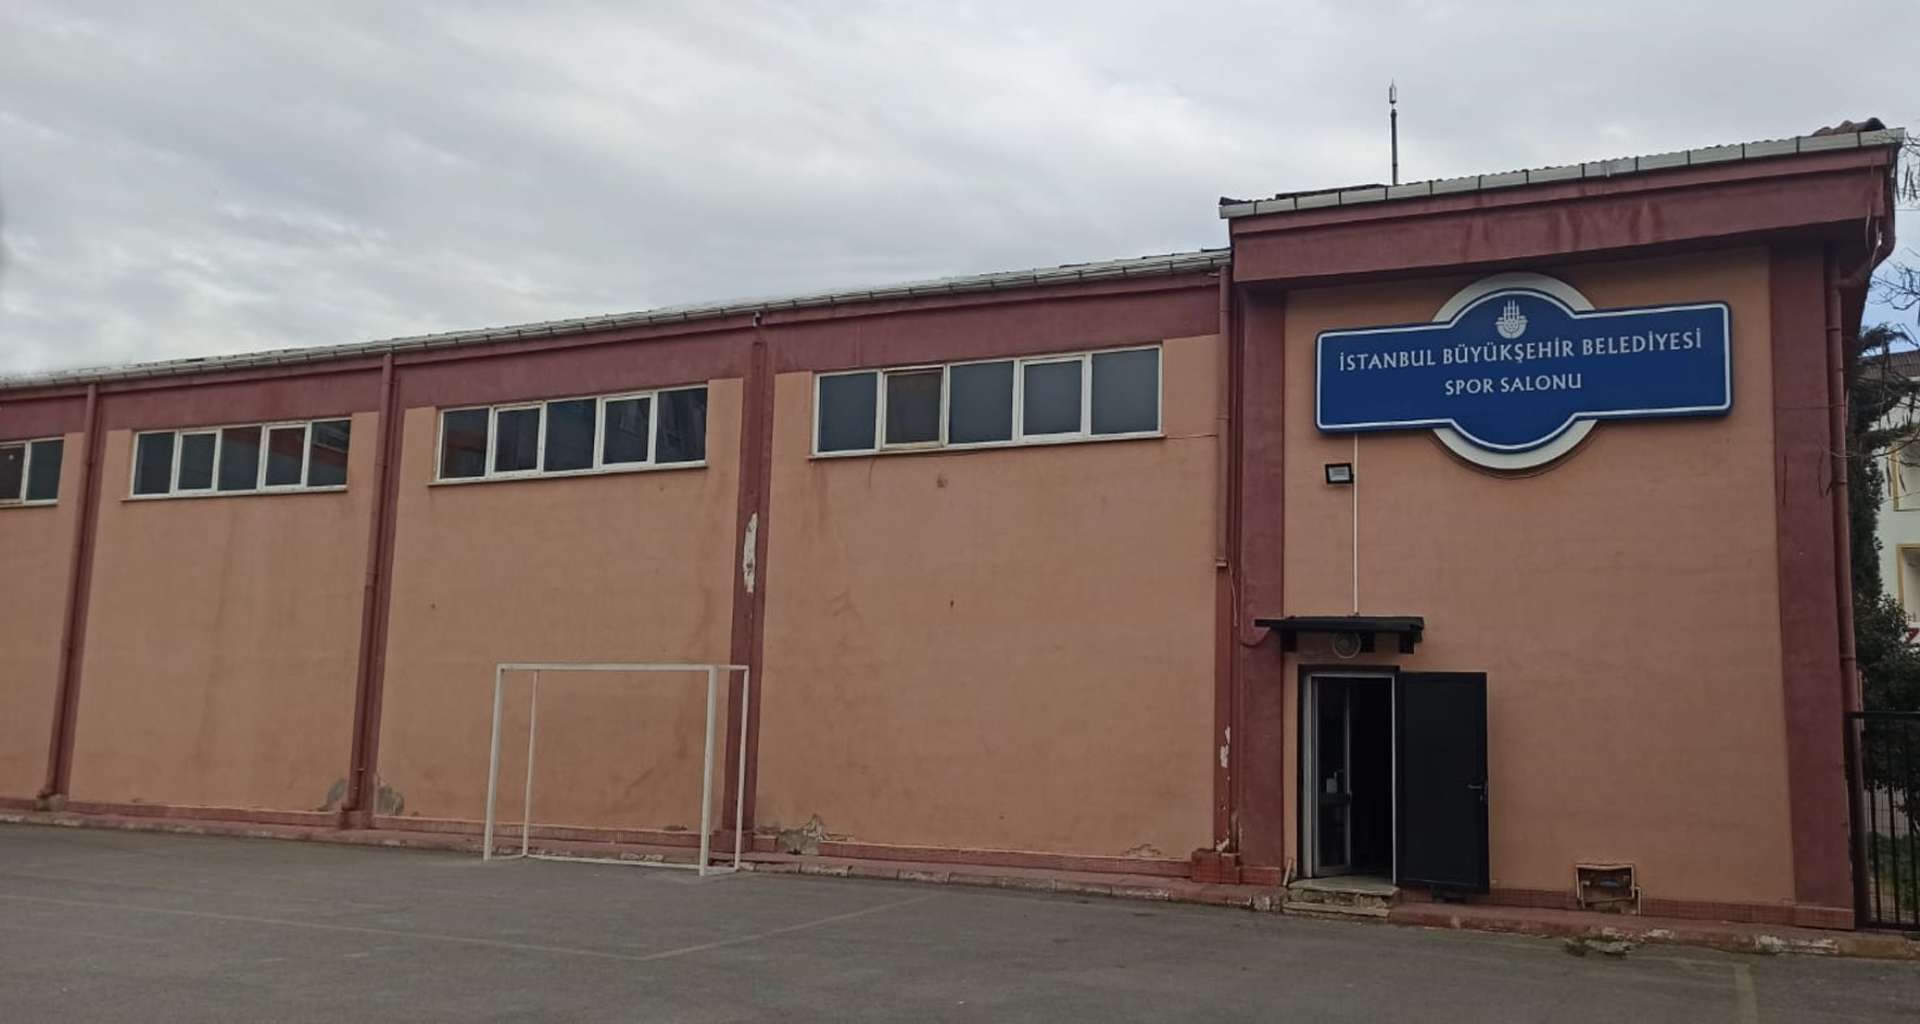 Yenidoğan Ortaokulu Spor Salonu